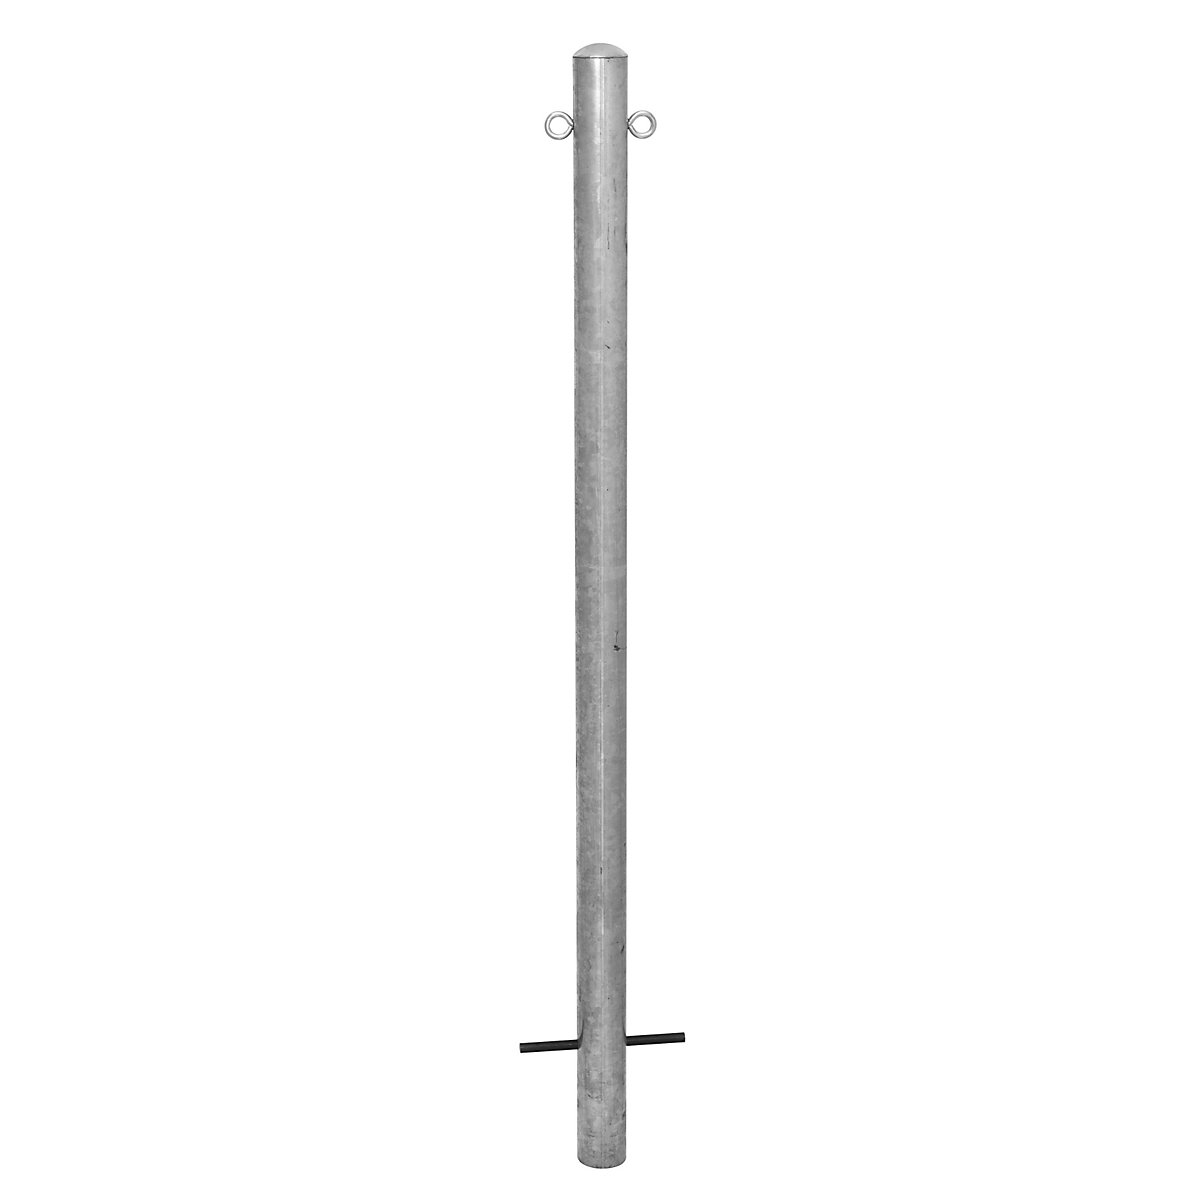 Stup za ograđivanje, za betoniranje, Ø 76 mm, vruće pocinčana izvedba, 2 ušice-12